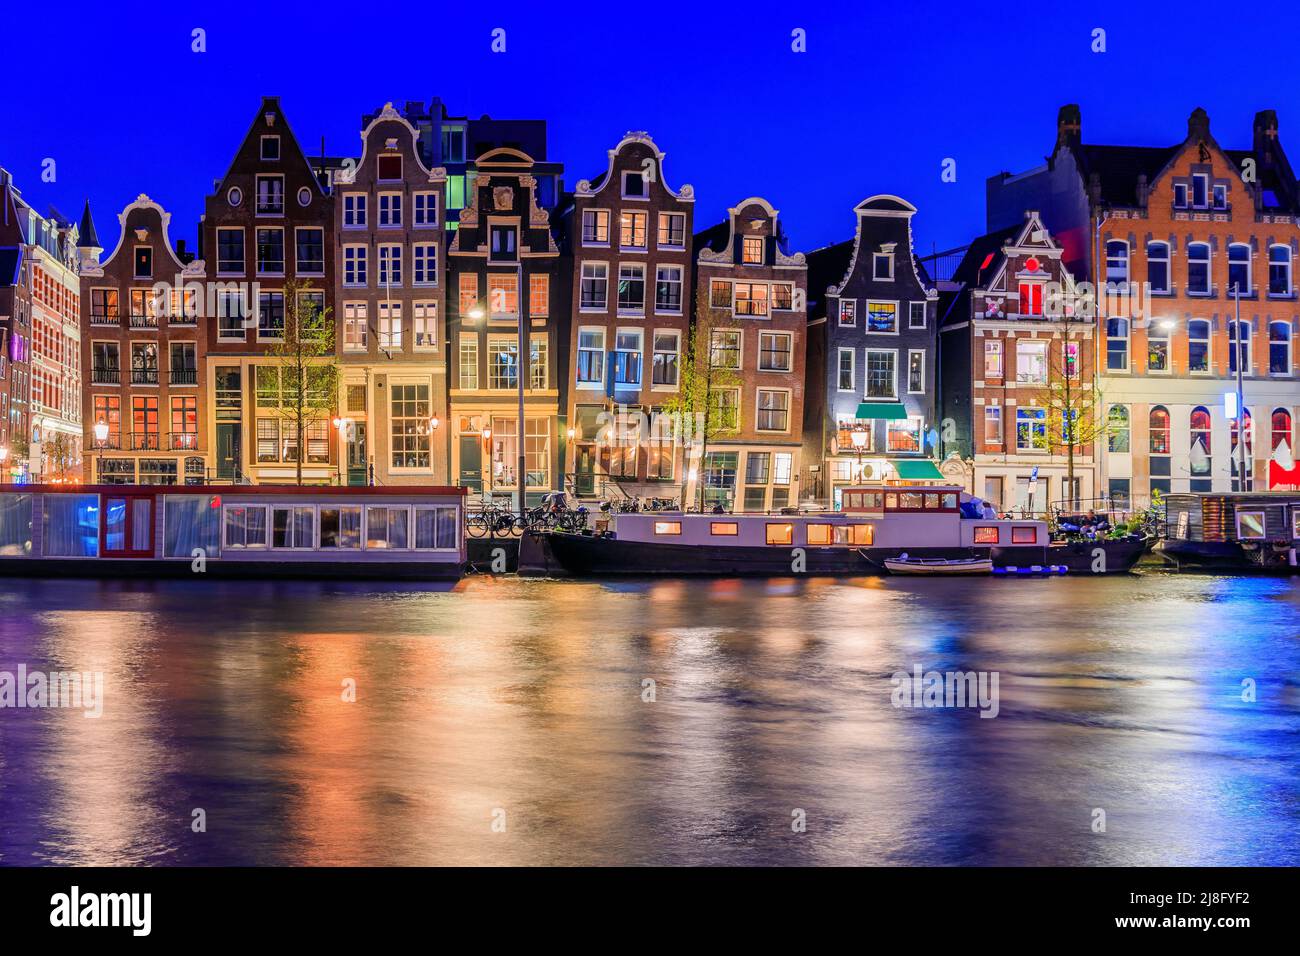 Ámsterdam, Países Bajos. Coloridas casas de baile en el canal Damrak. Foto de stock